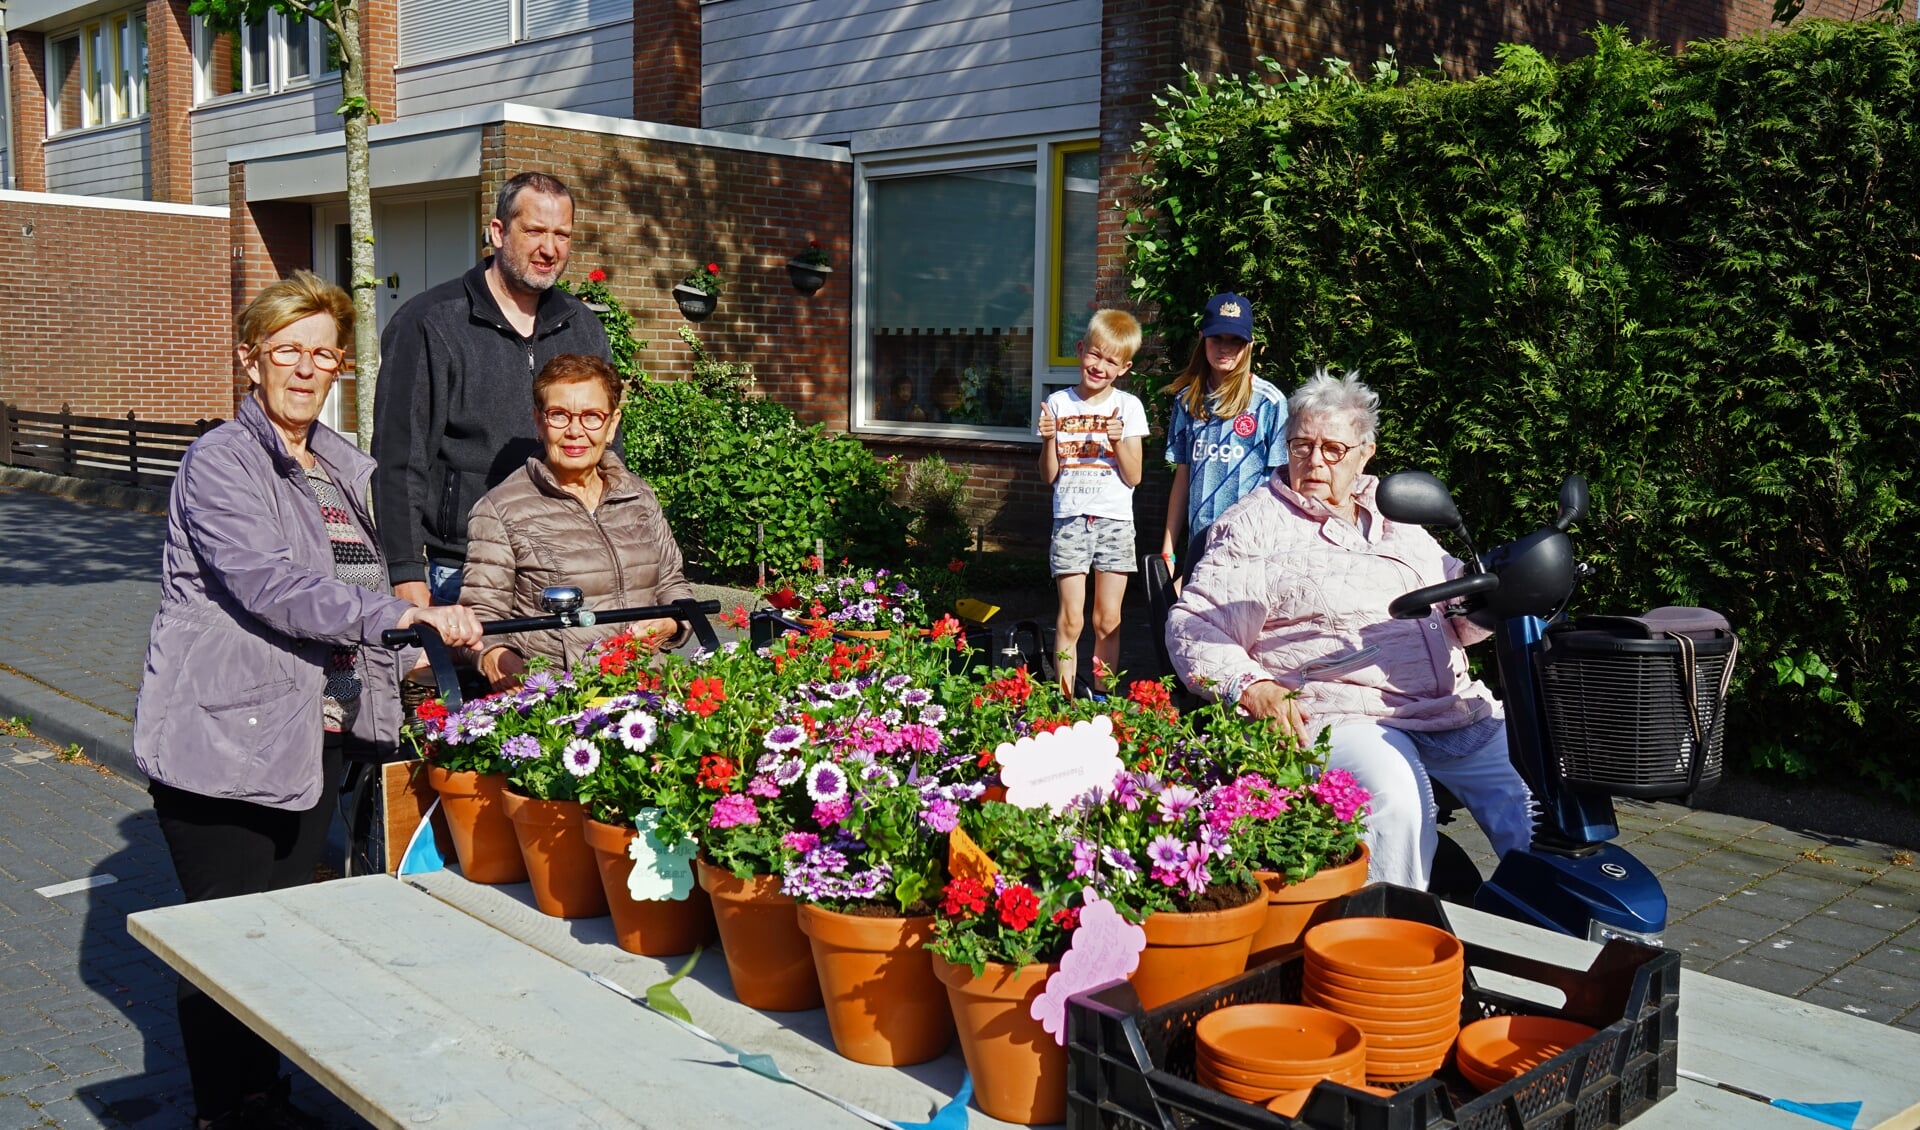 Mieke Koudijs, Rita Pfister en  Marie TImmerman met de fleurige attentie voor bewoners Horstwijk laag. Ook op de foto staat buurman Ronald en zijn kinderen Lucas en Jessica.